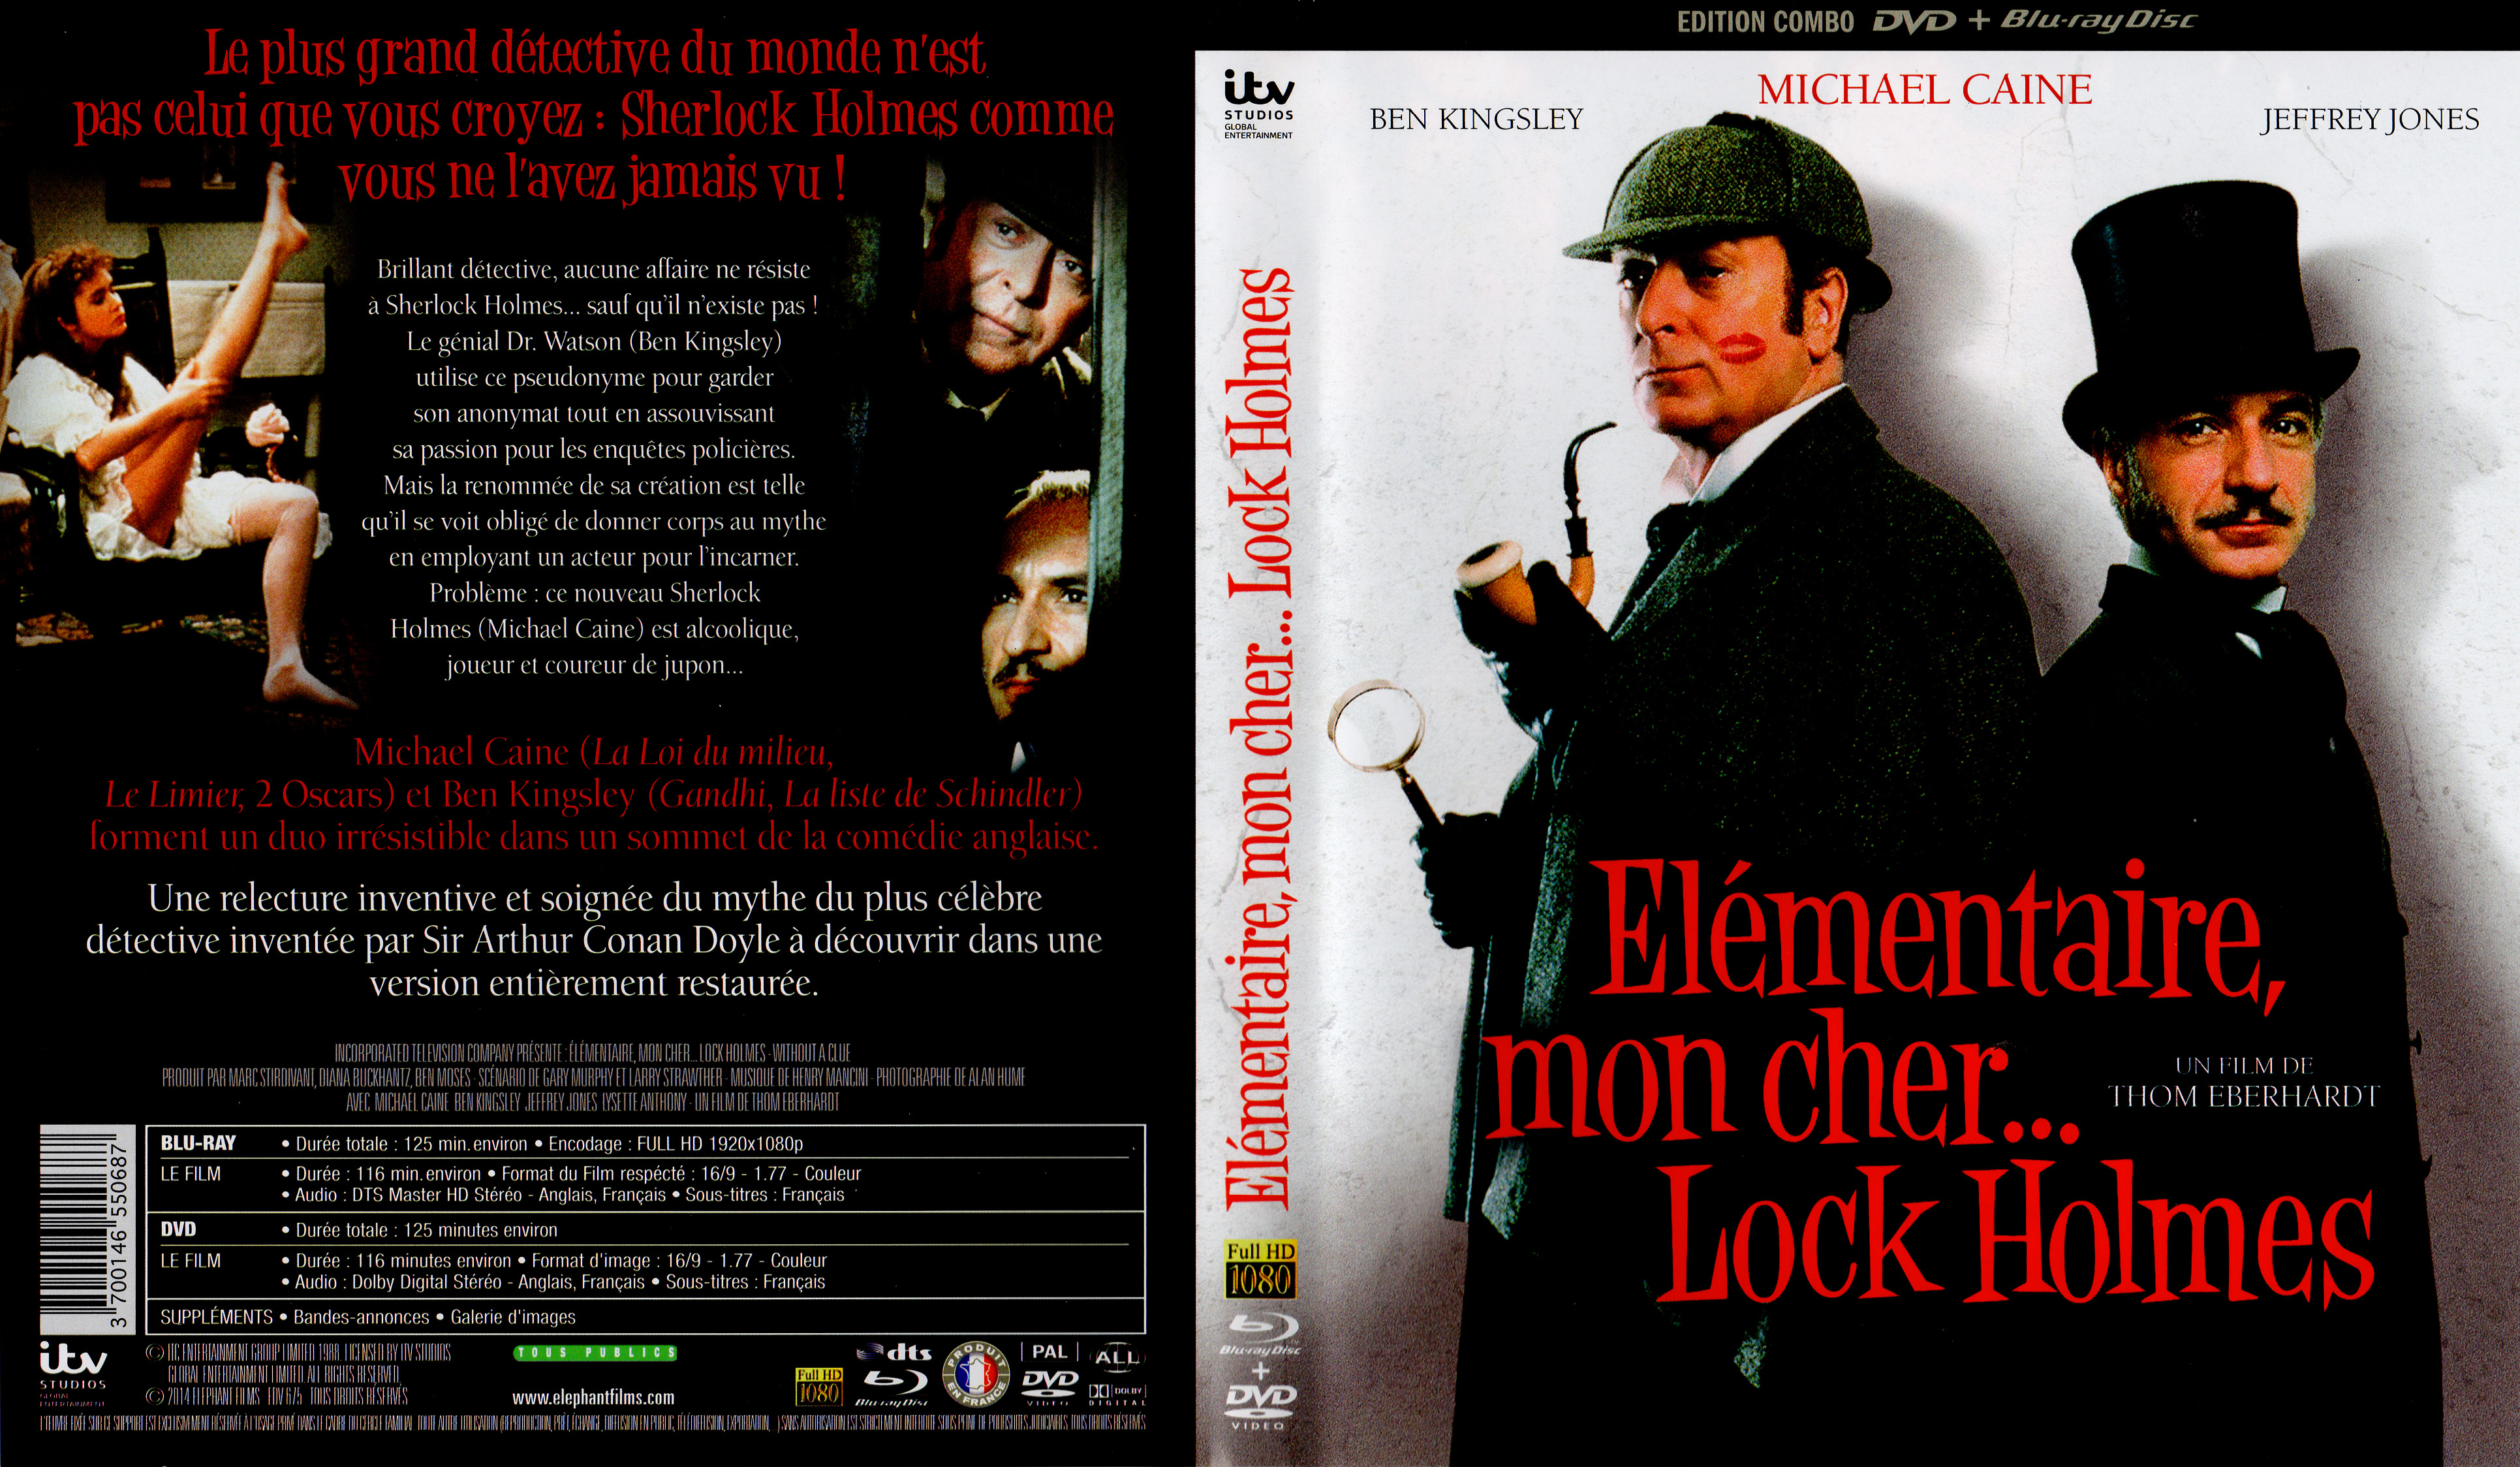 Jaquette DVD de Elementaire mon cher Lock Holmes (BLU-RAY) - Cinéma Passion